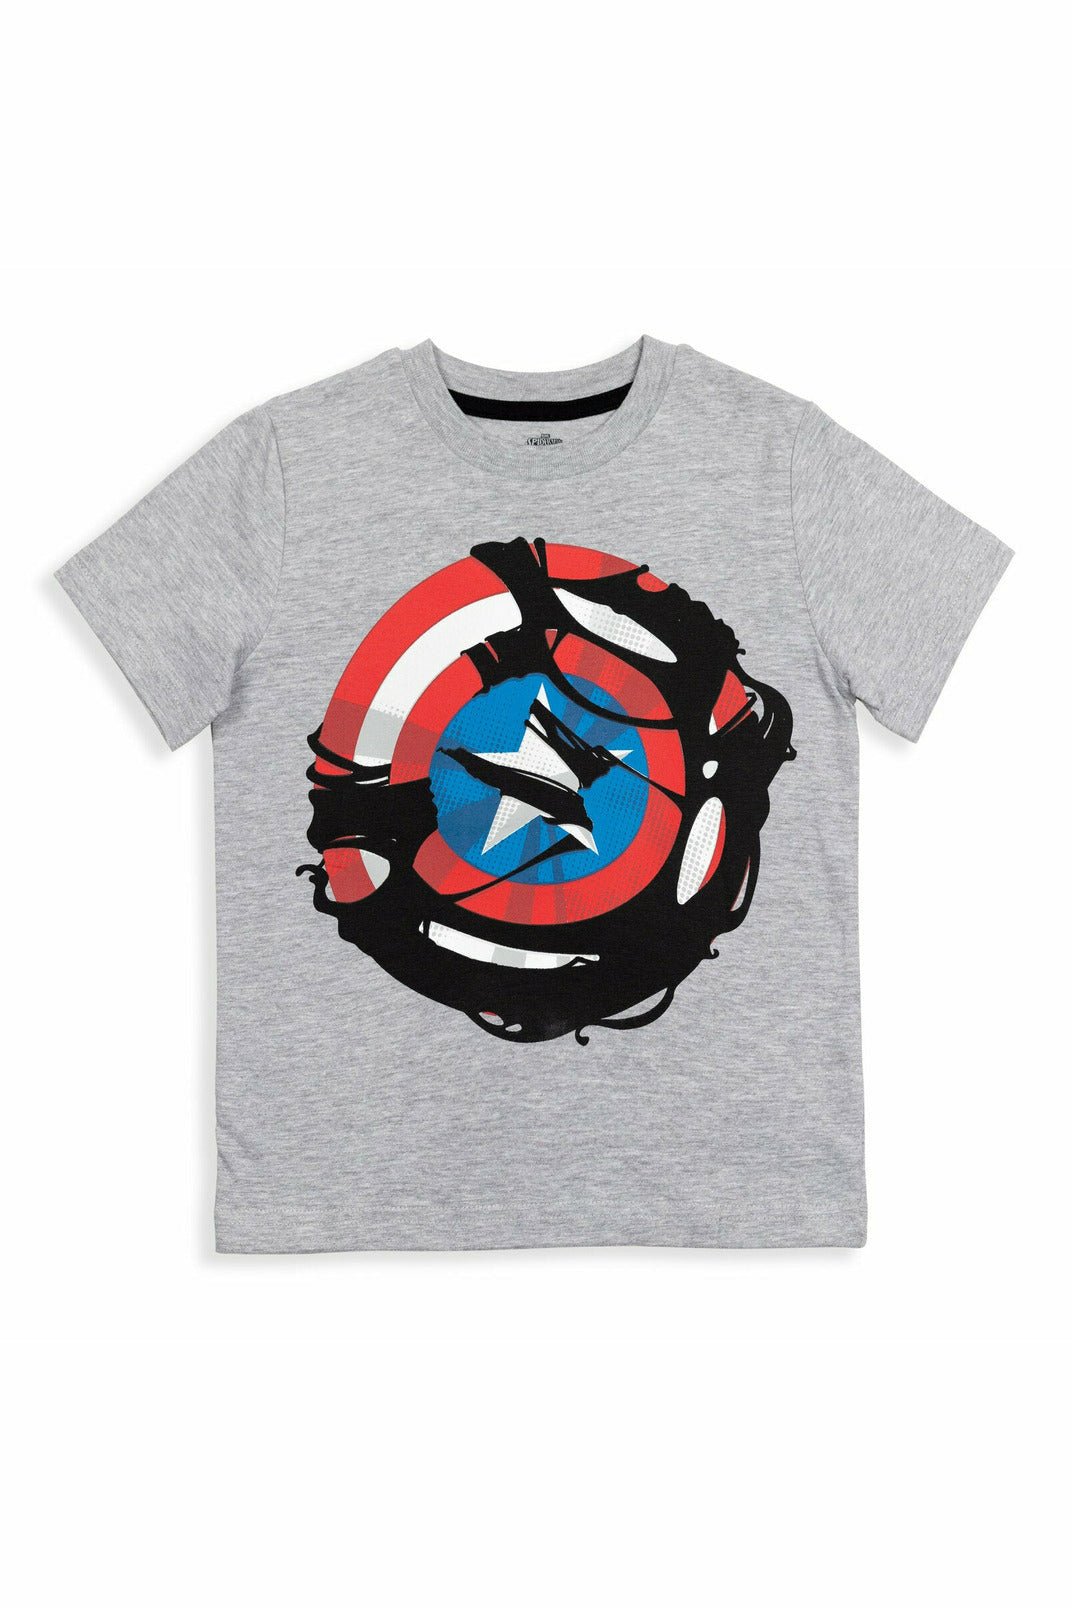 Marvel Avengers 3 Pack Graphic T-Shirt - imagikids